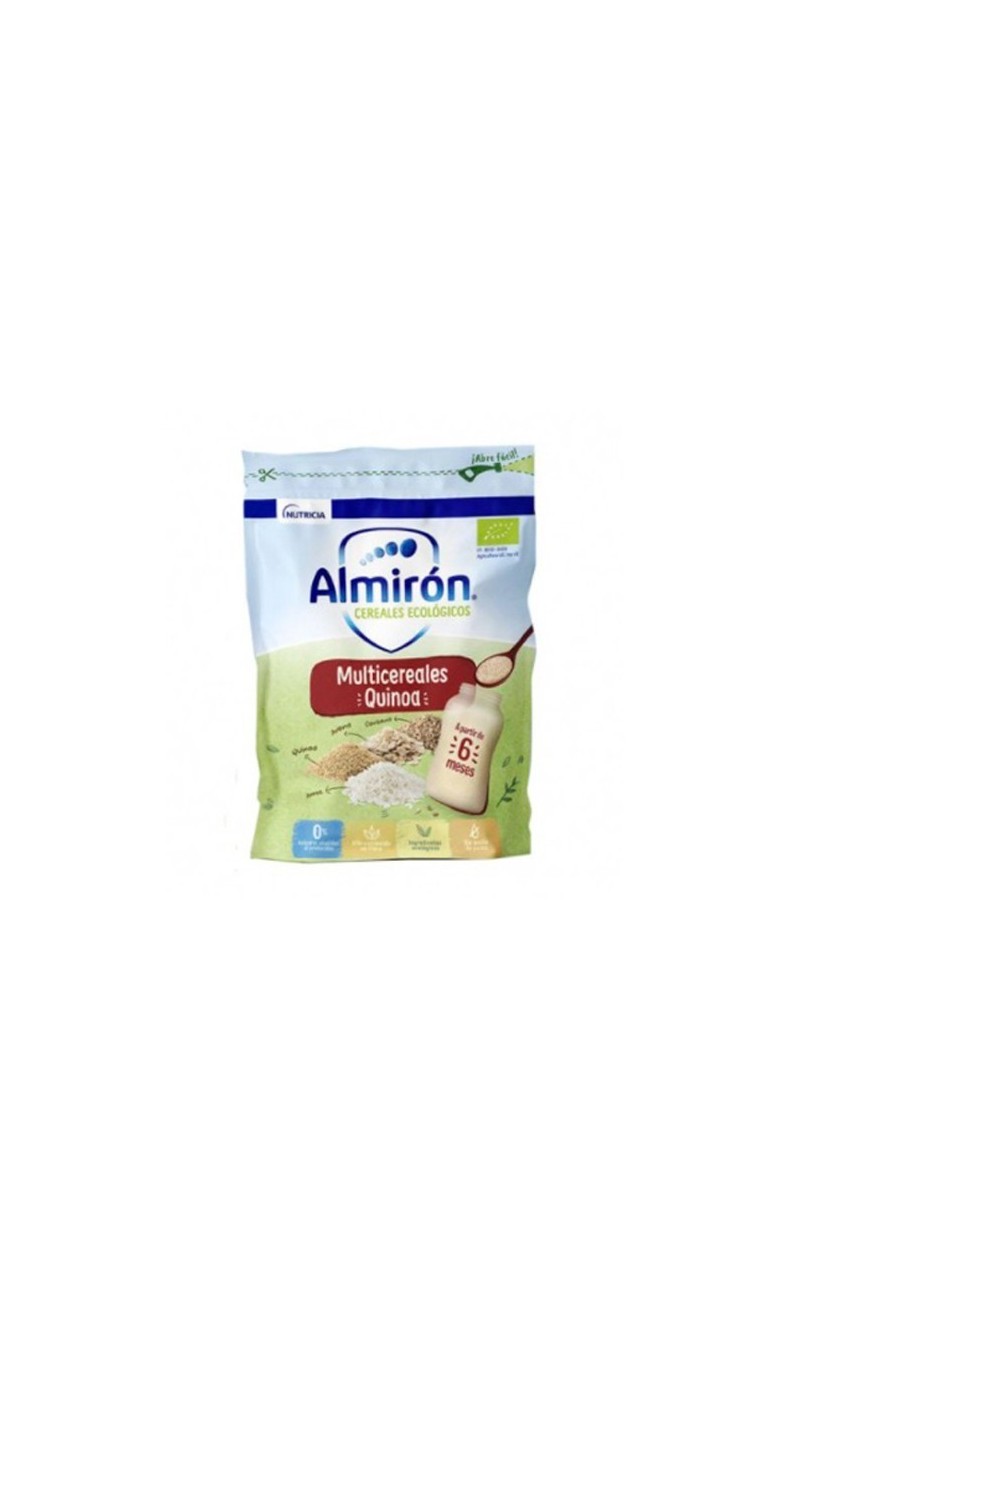 ALMIRÓN - Almiron Multicereal With Quinoa Eco 1 Bag 200g